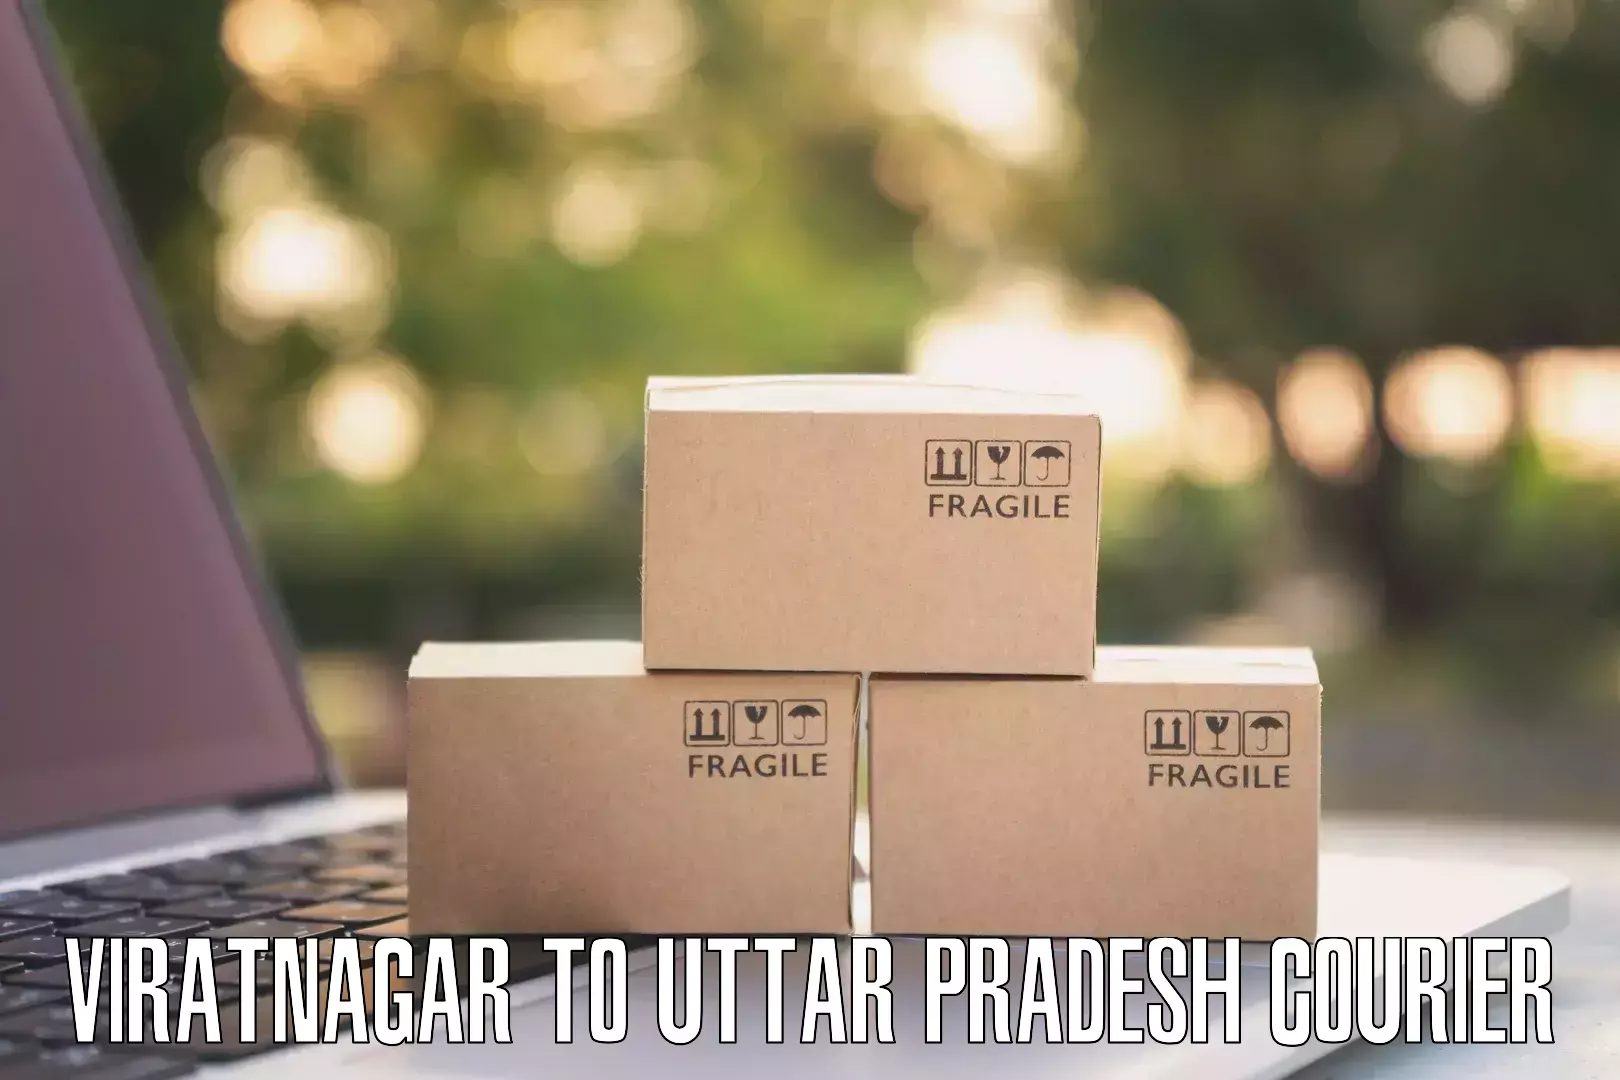 Secure packaging Viratnagar to Dataganj